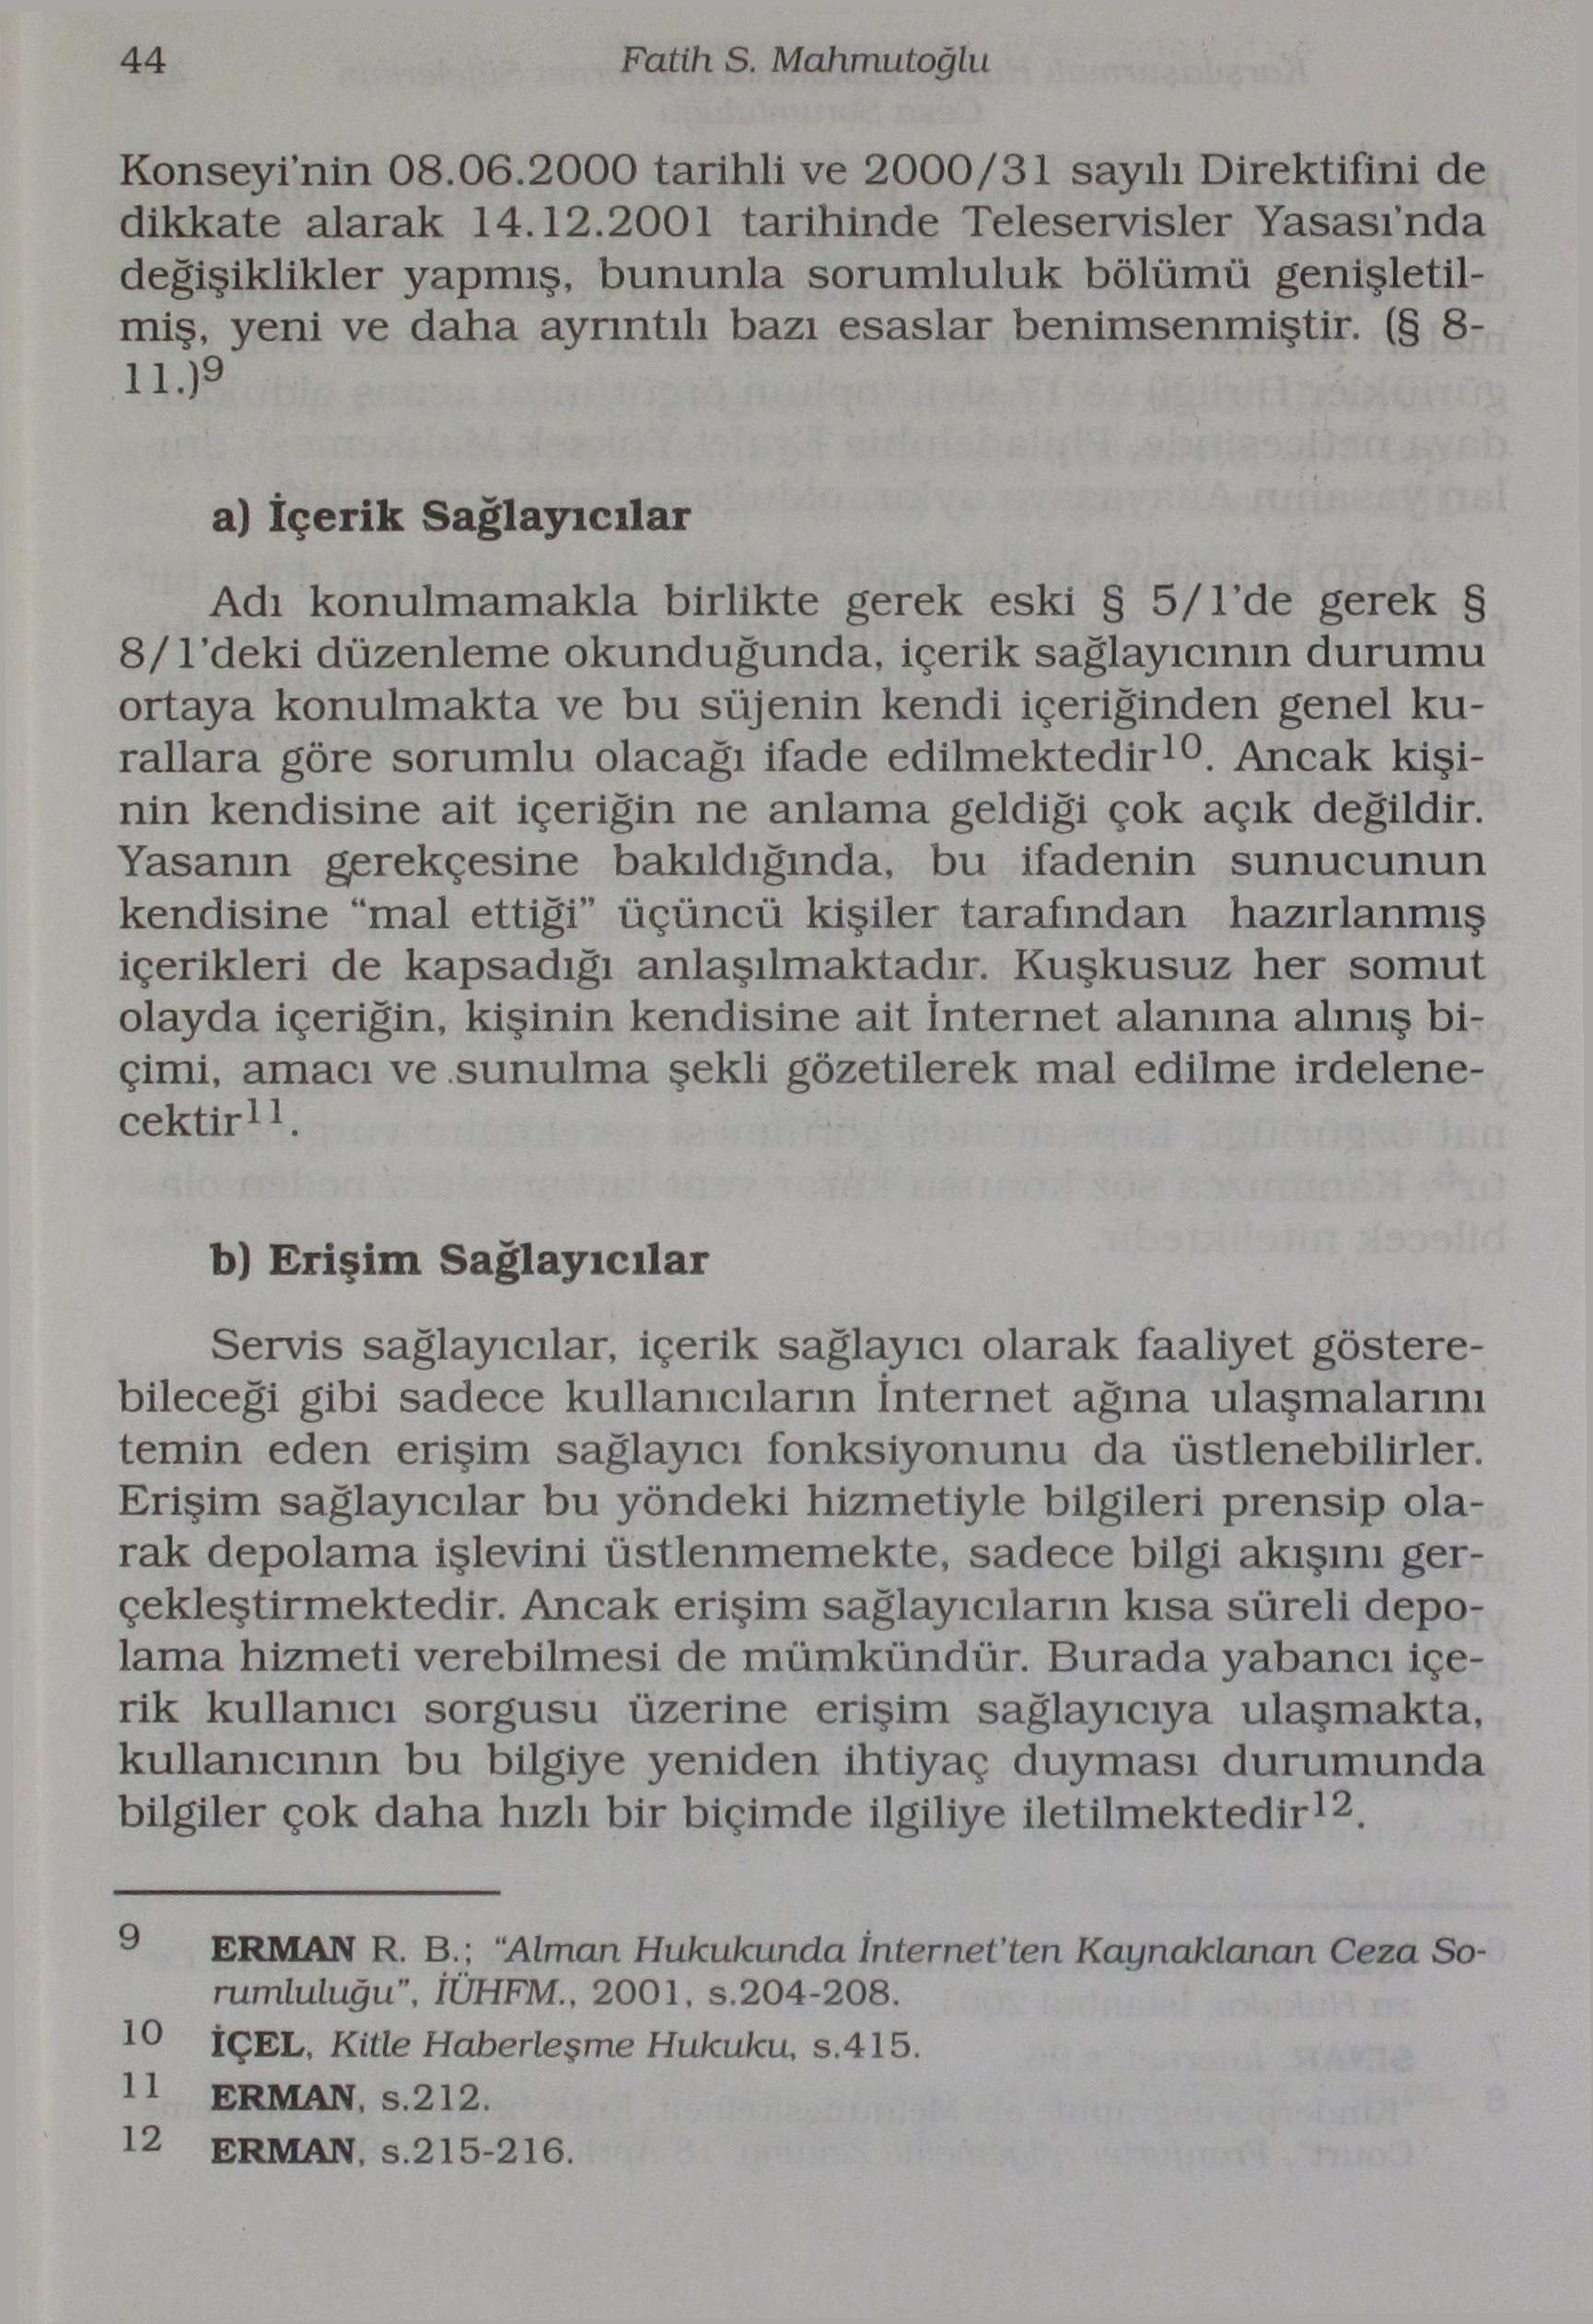 44 Fatih S. Mahmutoğlu Konseyi nin 08.06.2000 tarihli ve 2000/31 sayılı Direktifini de dikkate alarak 14.12.